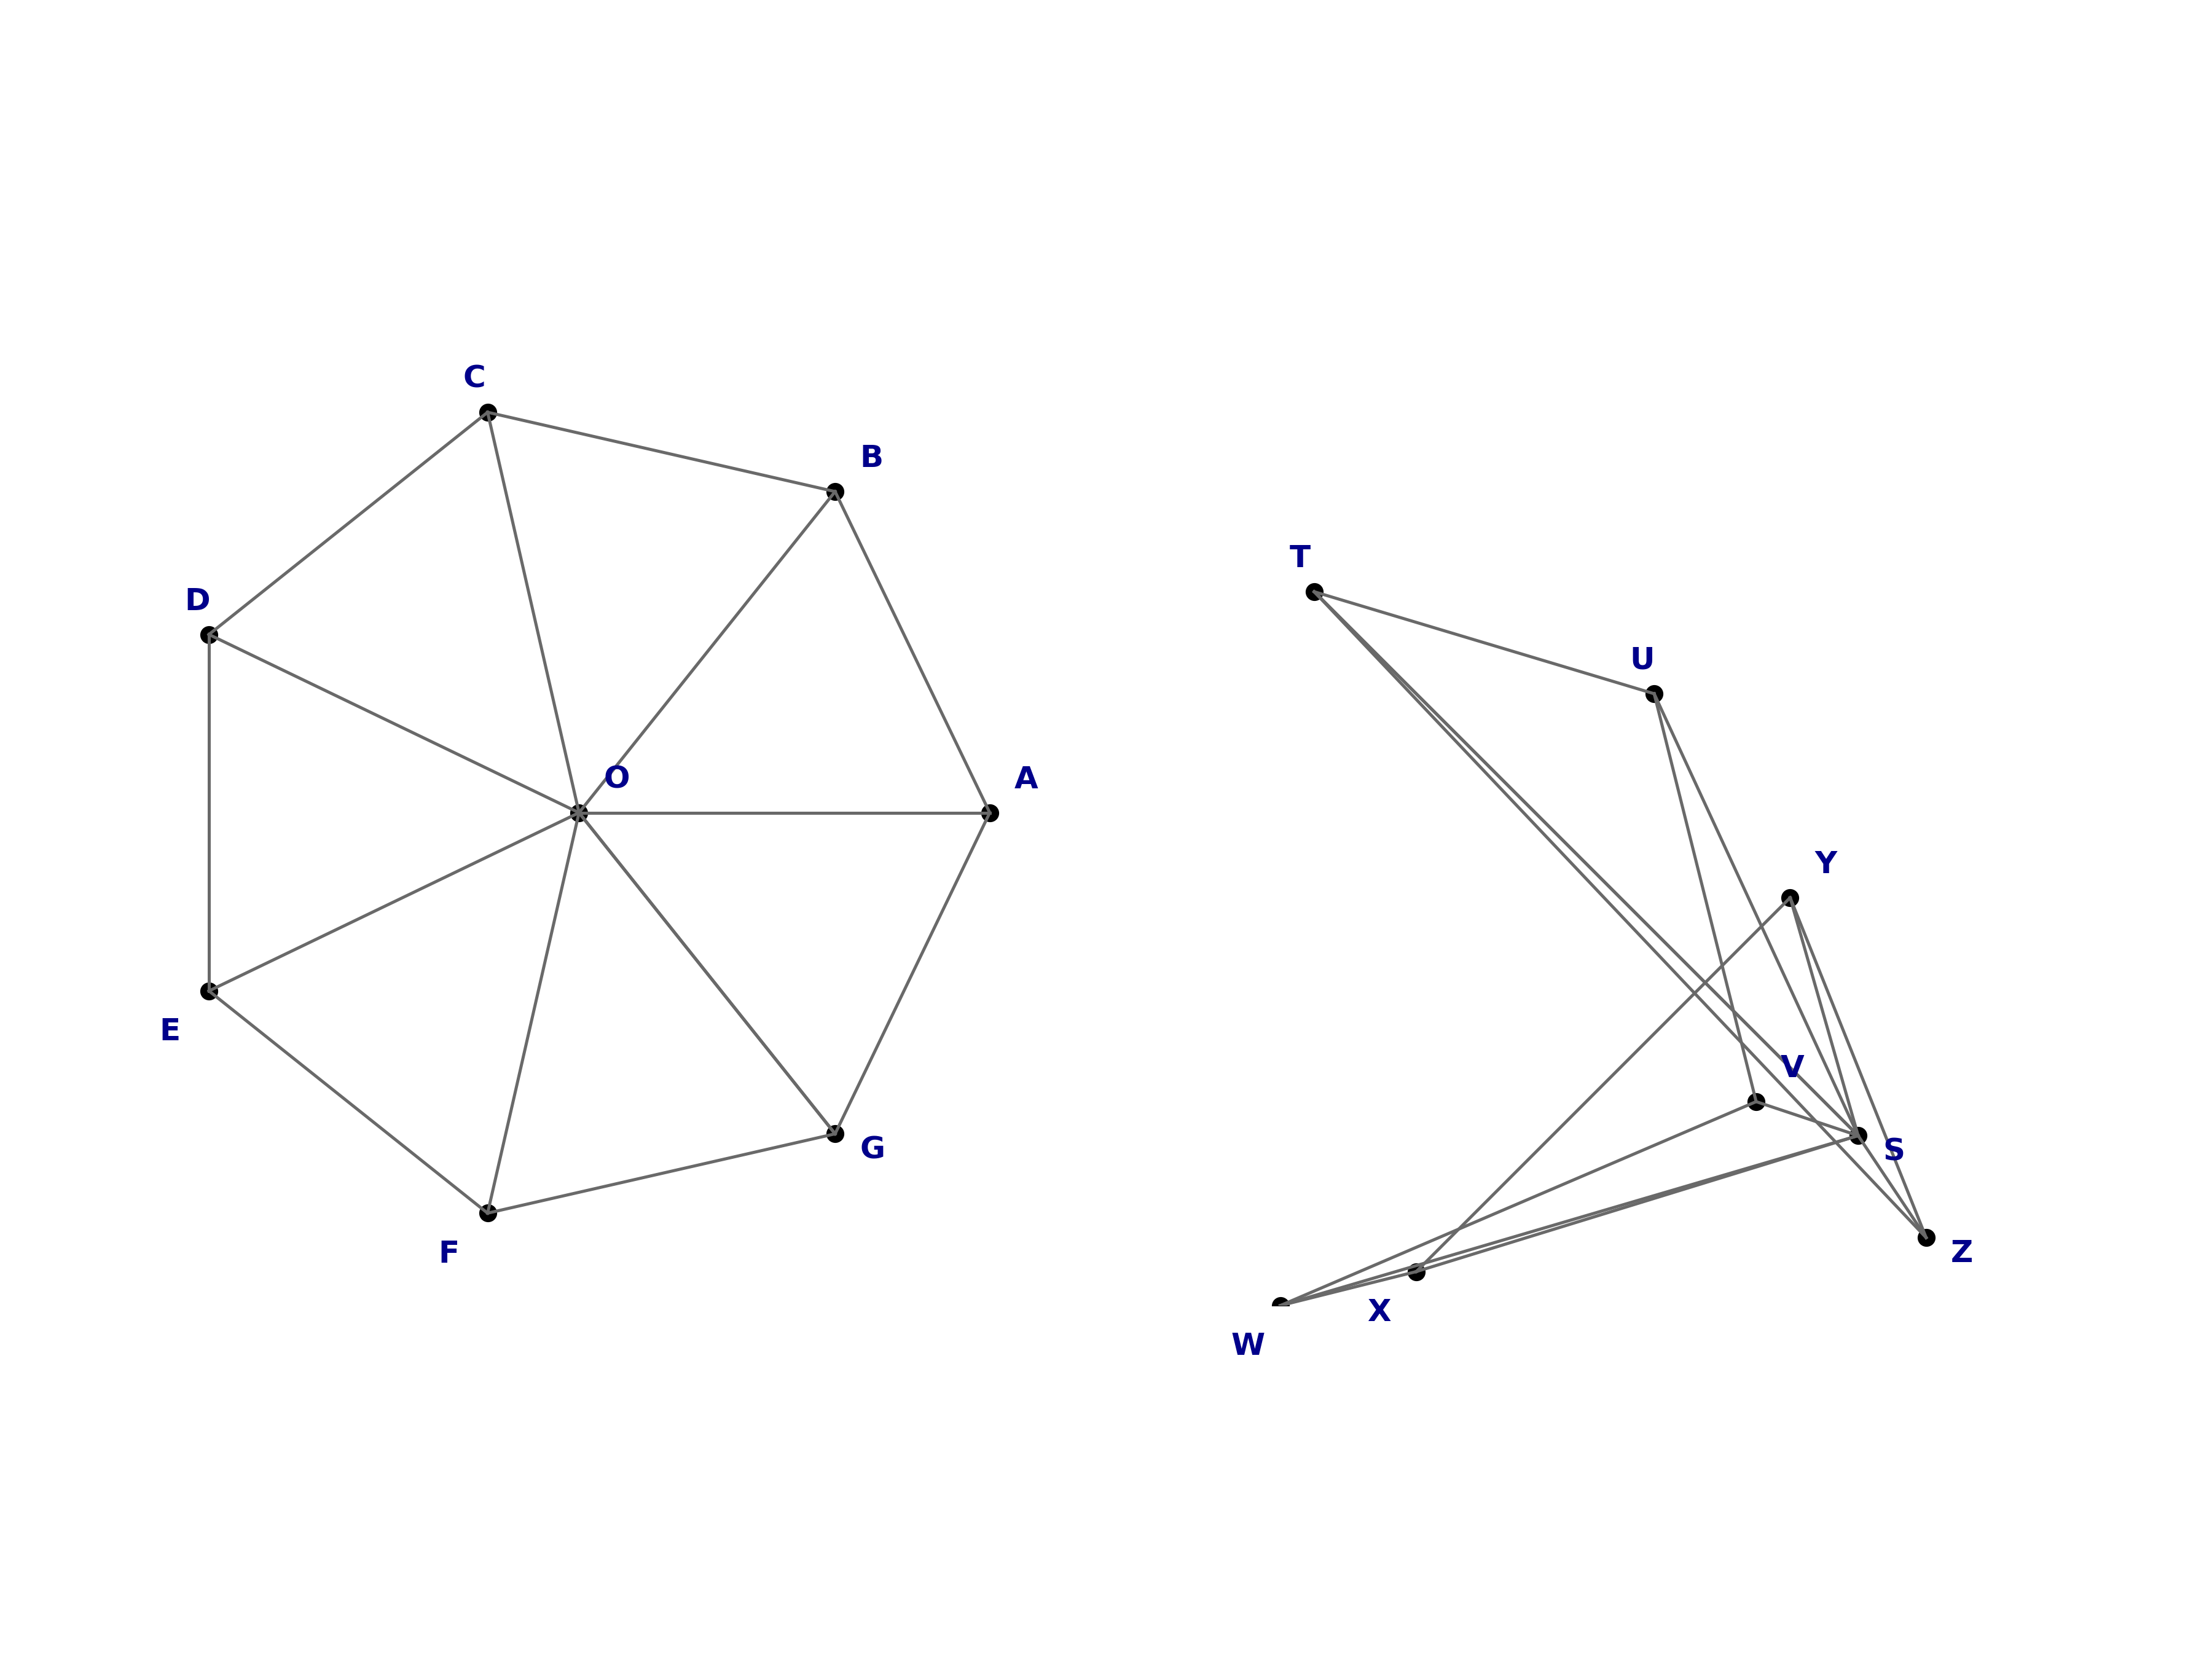 isomorphic graphs